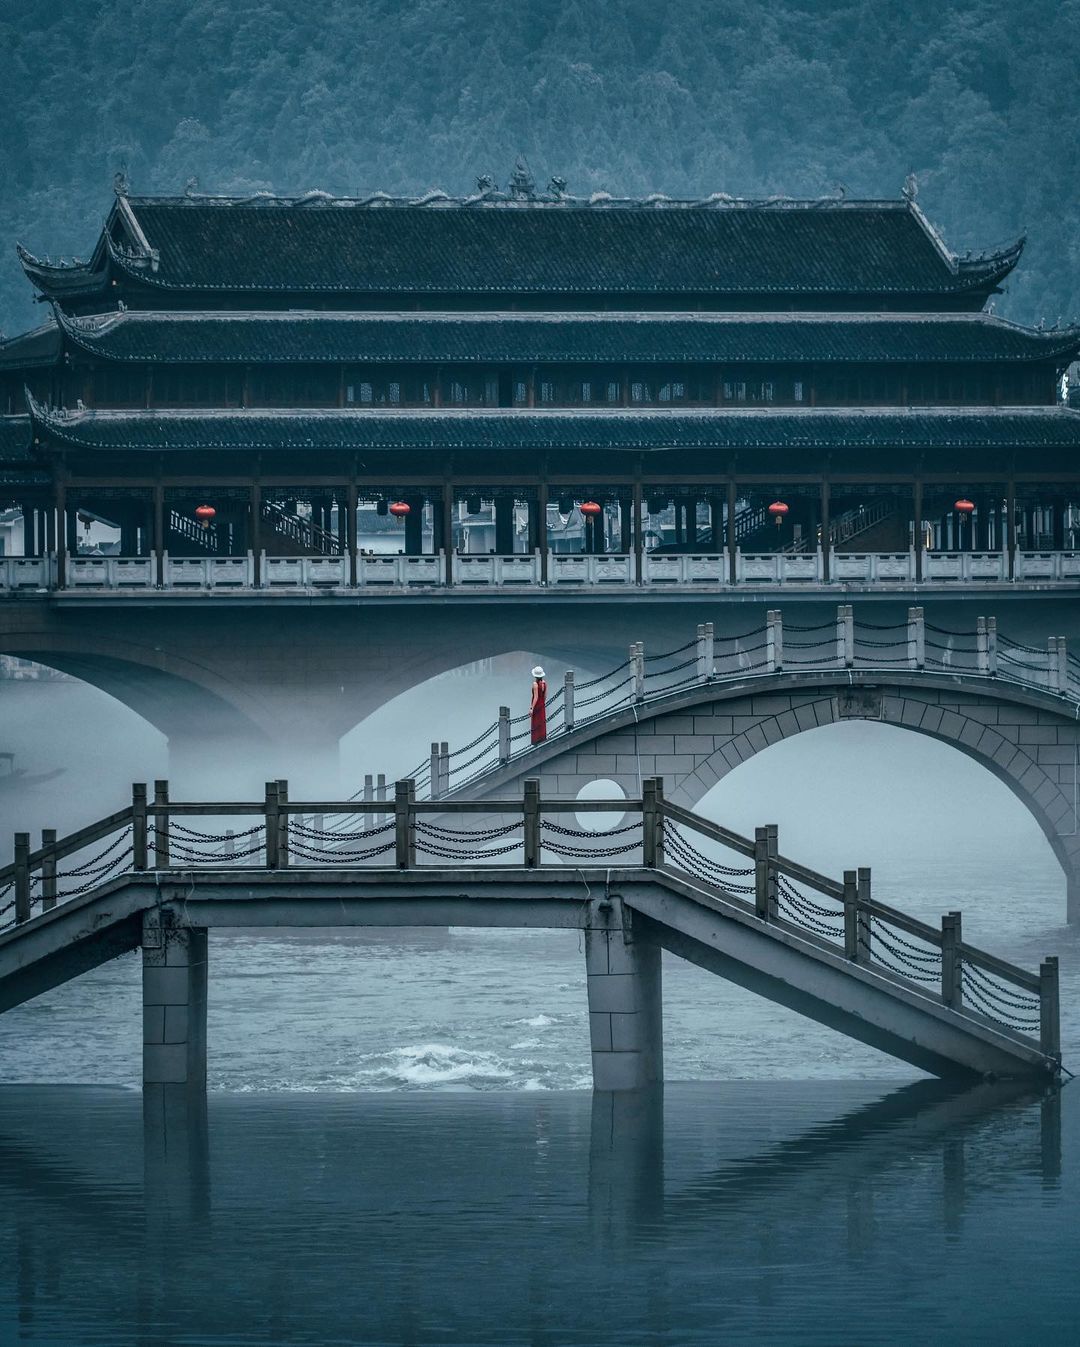 Городские и уличные снимки Китая от Чэнь Юй Чэня